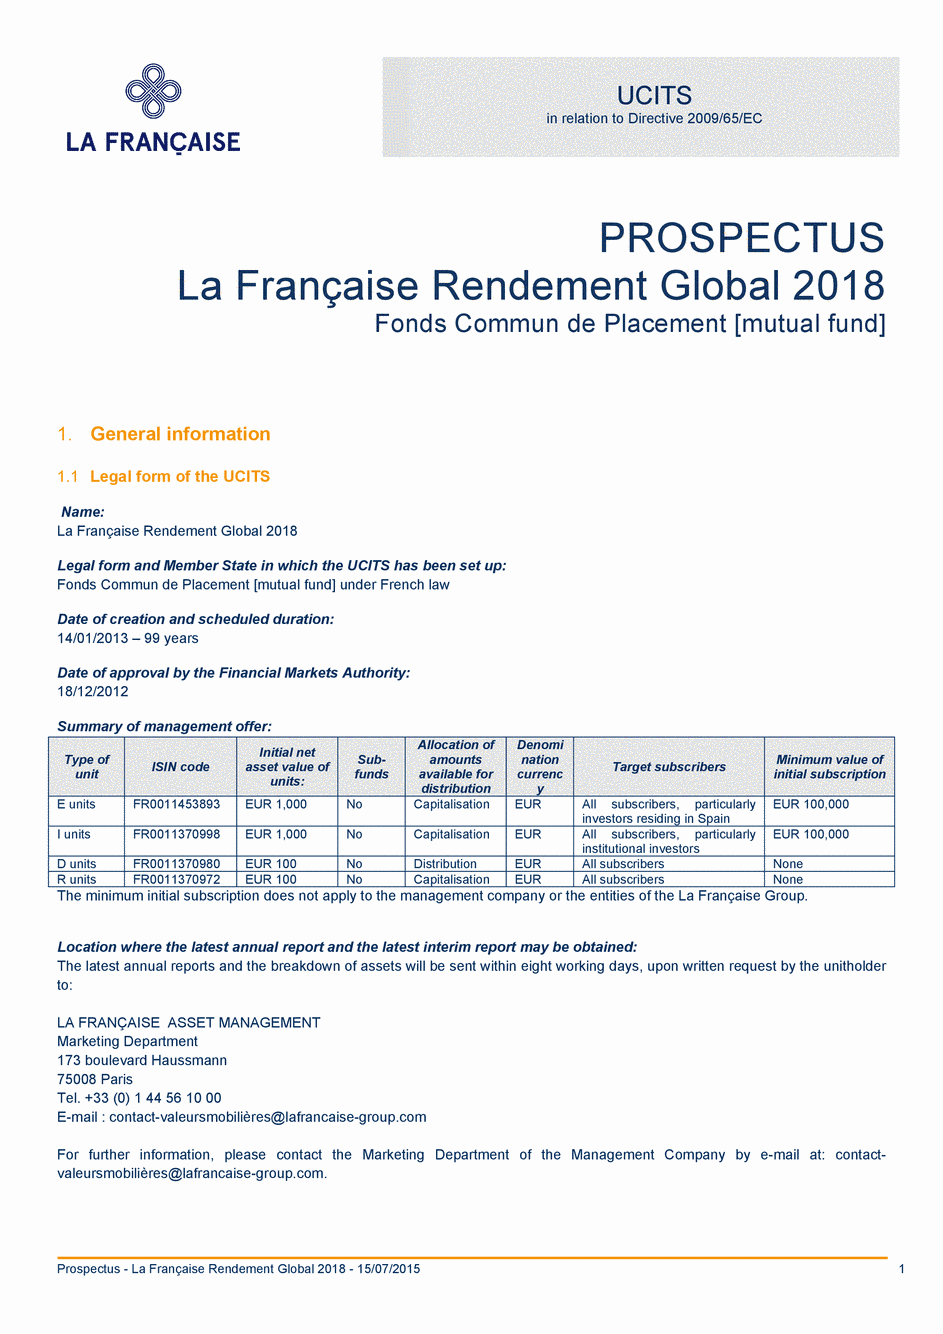 Prospectus LA FRANÇAISE RENDEMENT GLOBAL 2018 Part R - 15/07/2015 - Anglais